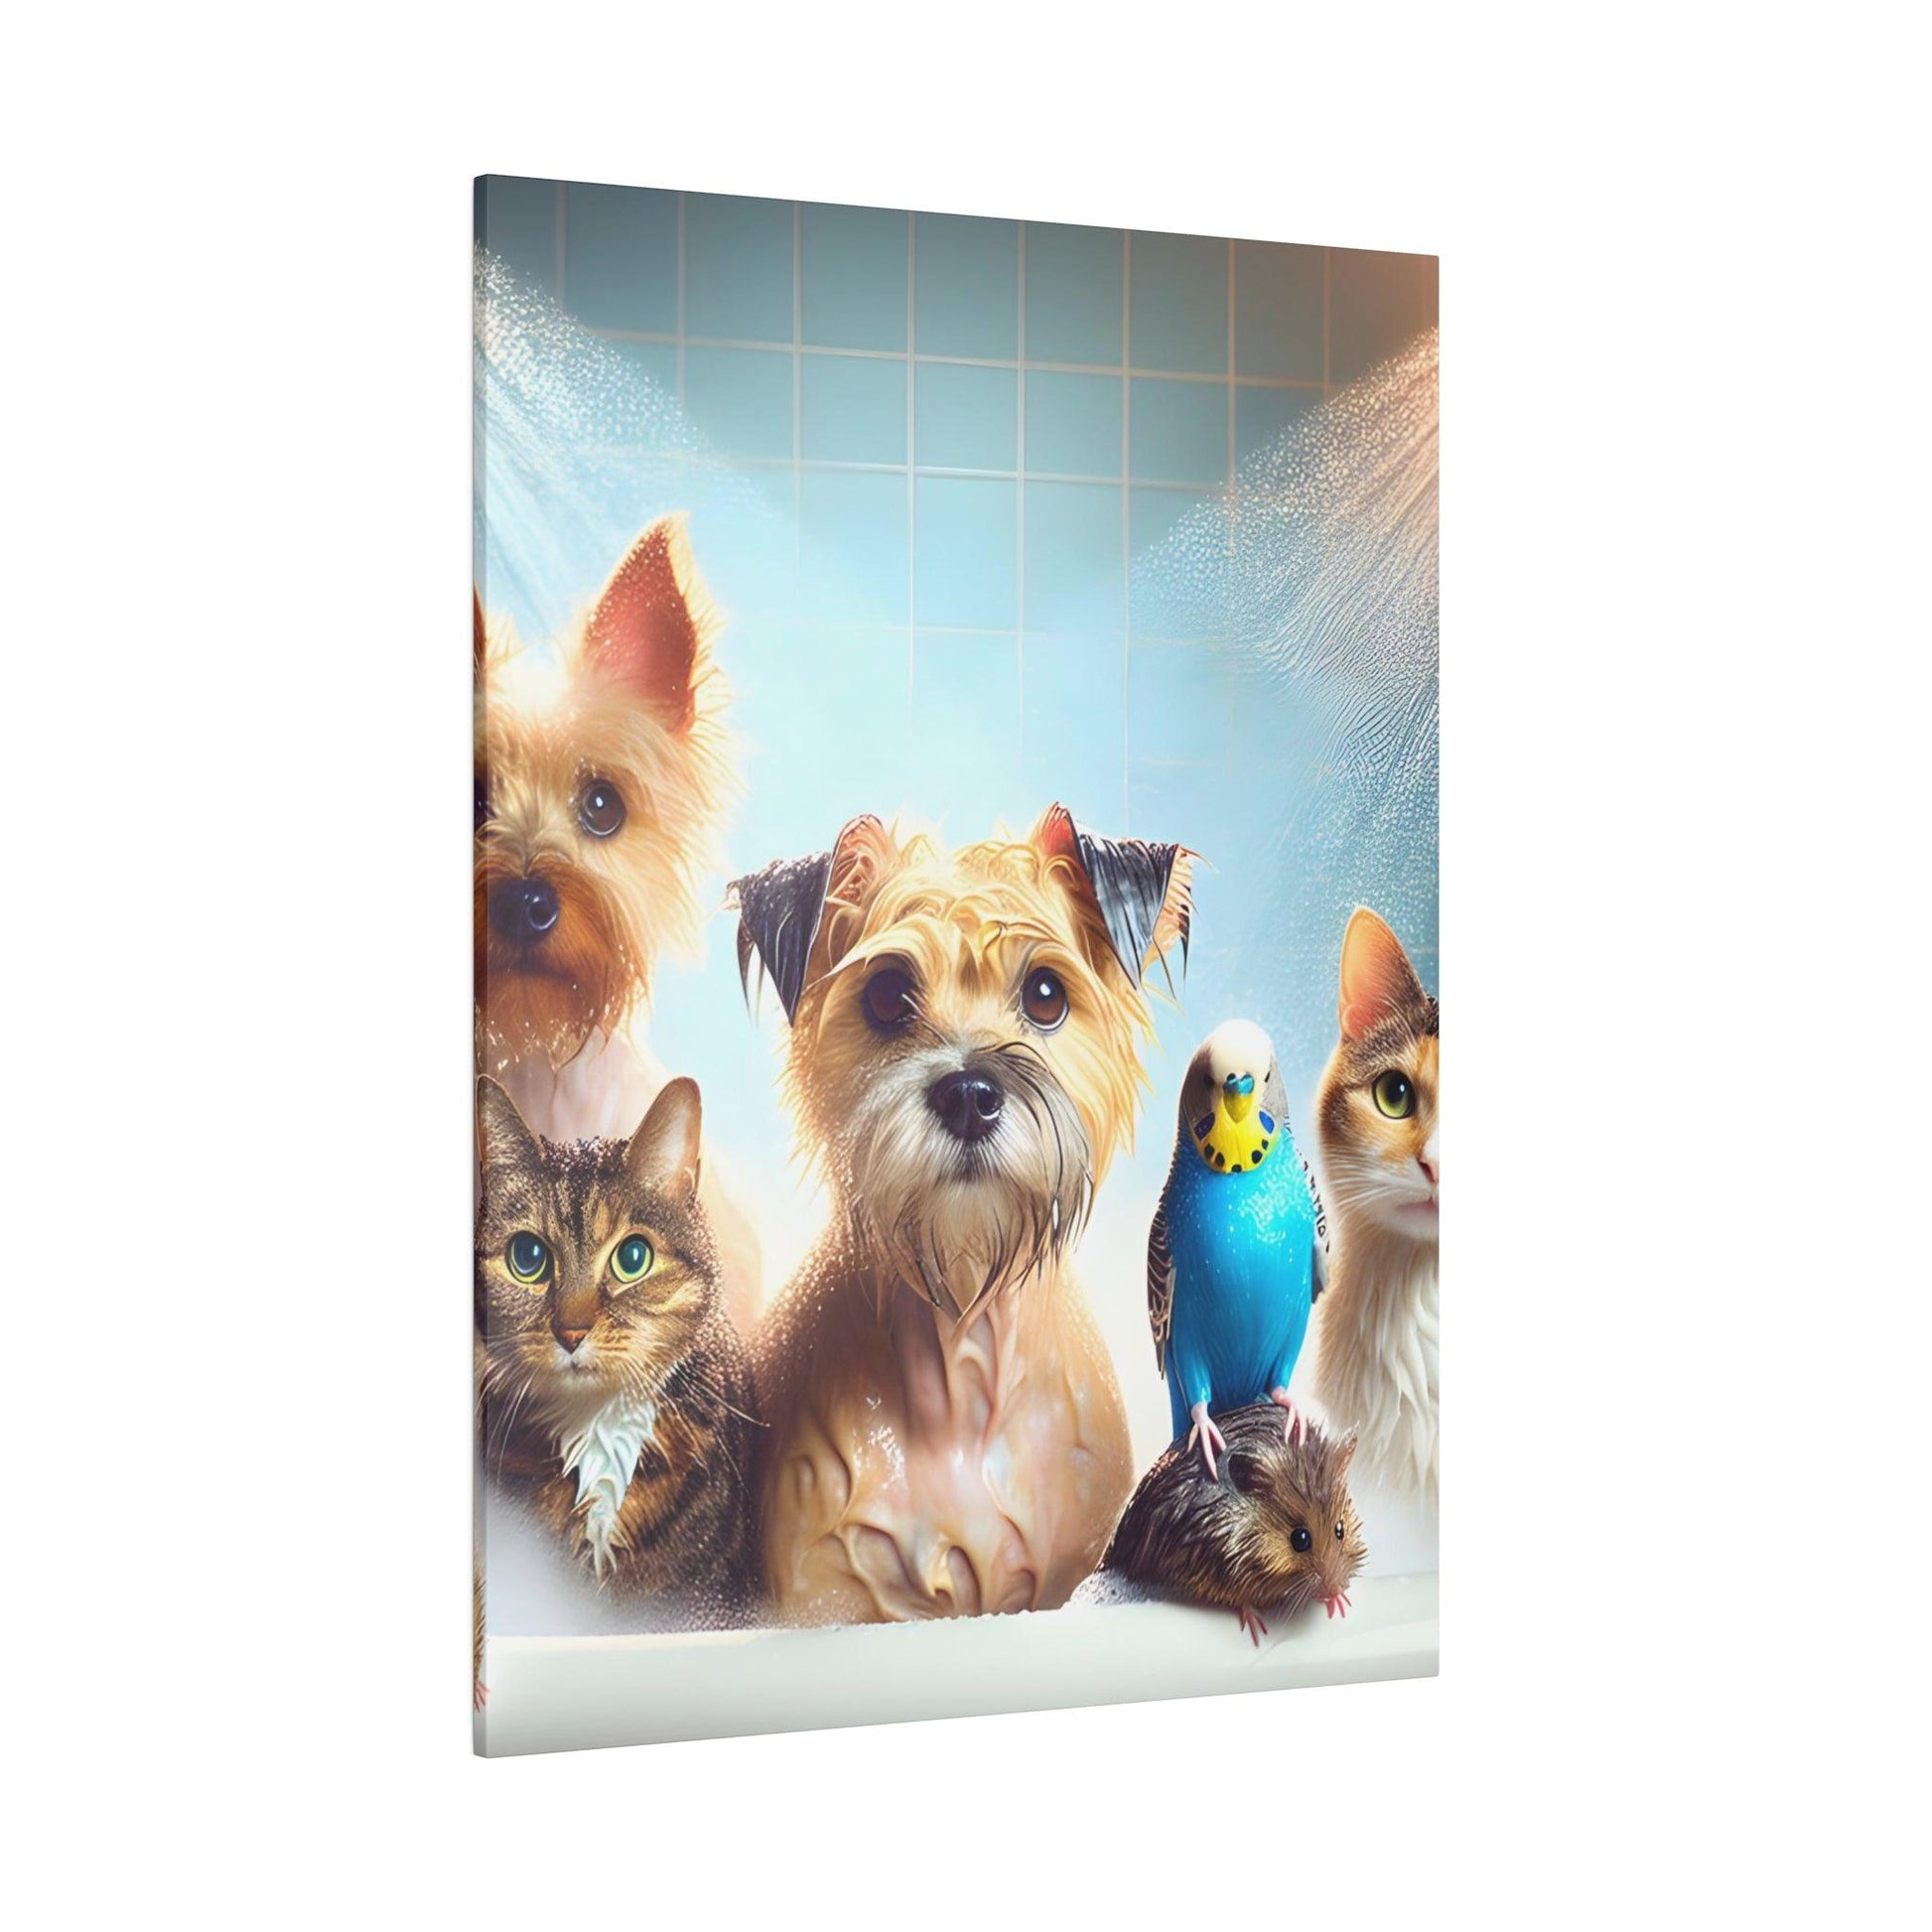 "Splash 'n' Frolic: Animals in the Bathtub Canvas Wall Art" - The Alice Gallery